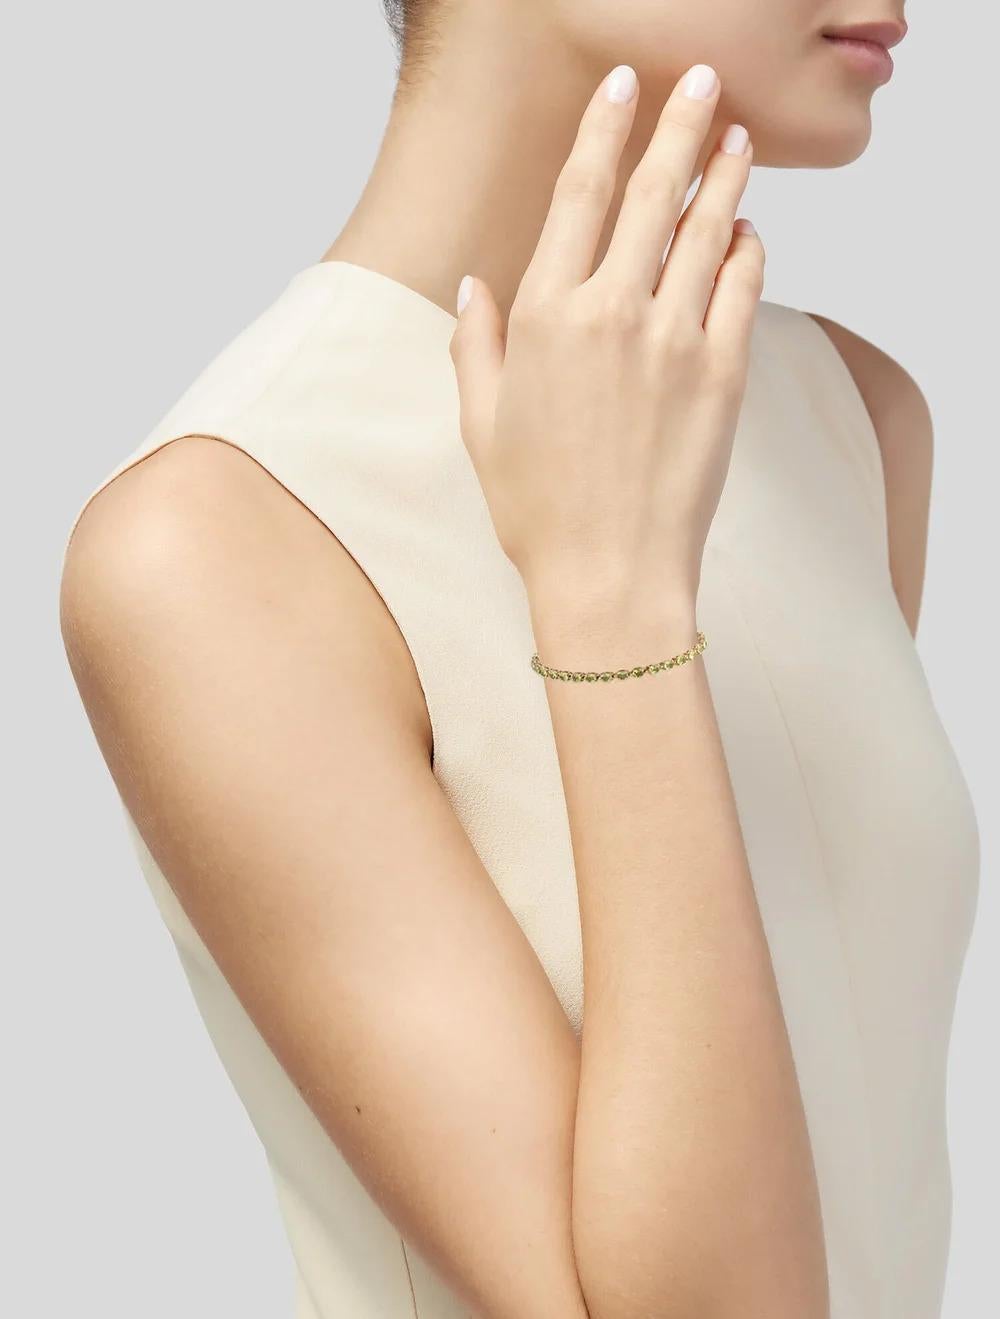 Oval Cut Exquisite 14K Peridot Link Bracelet - Elegant Design, Vibrant Green Gemstones For Sale